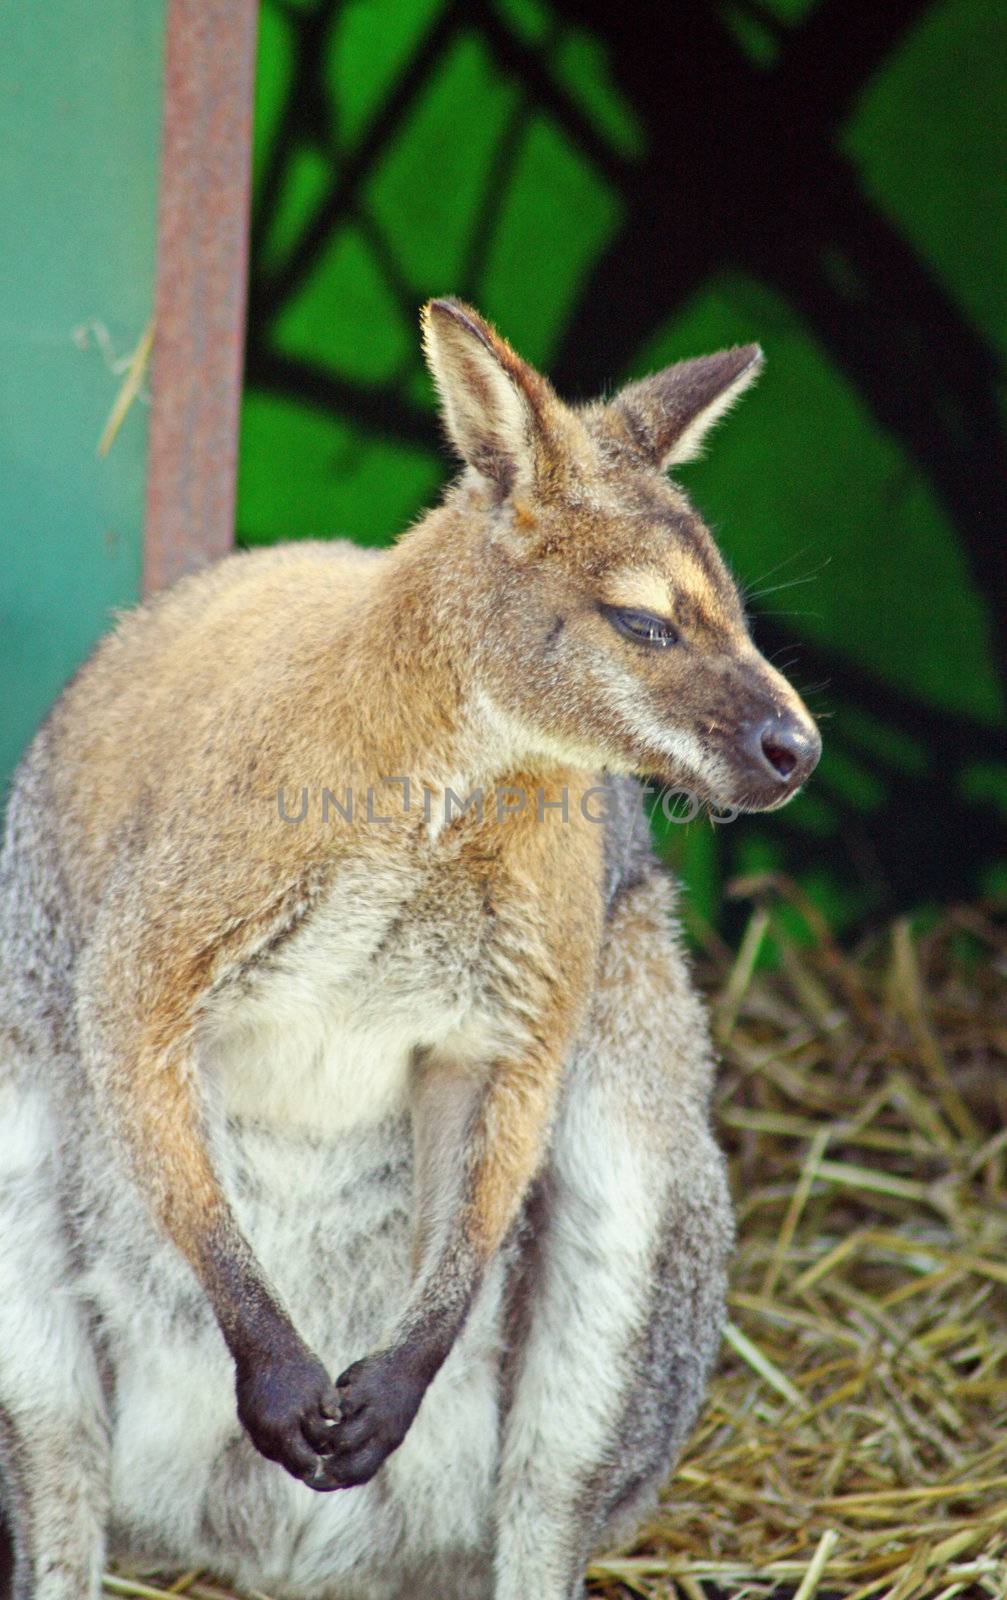 wallaby by lizapixels